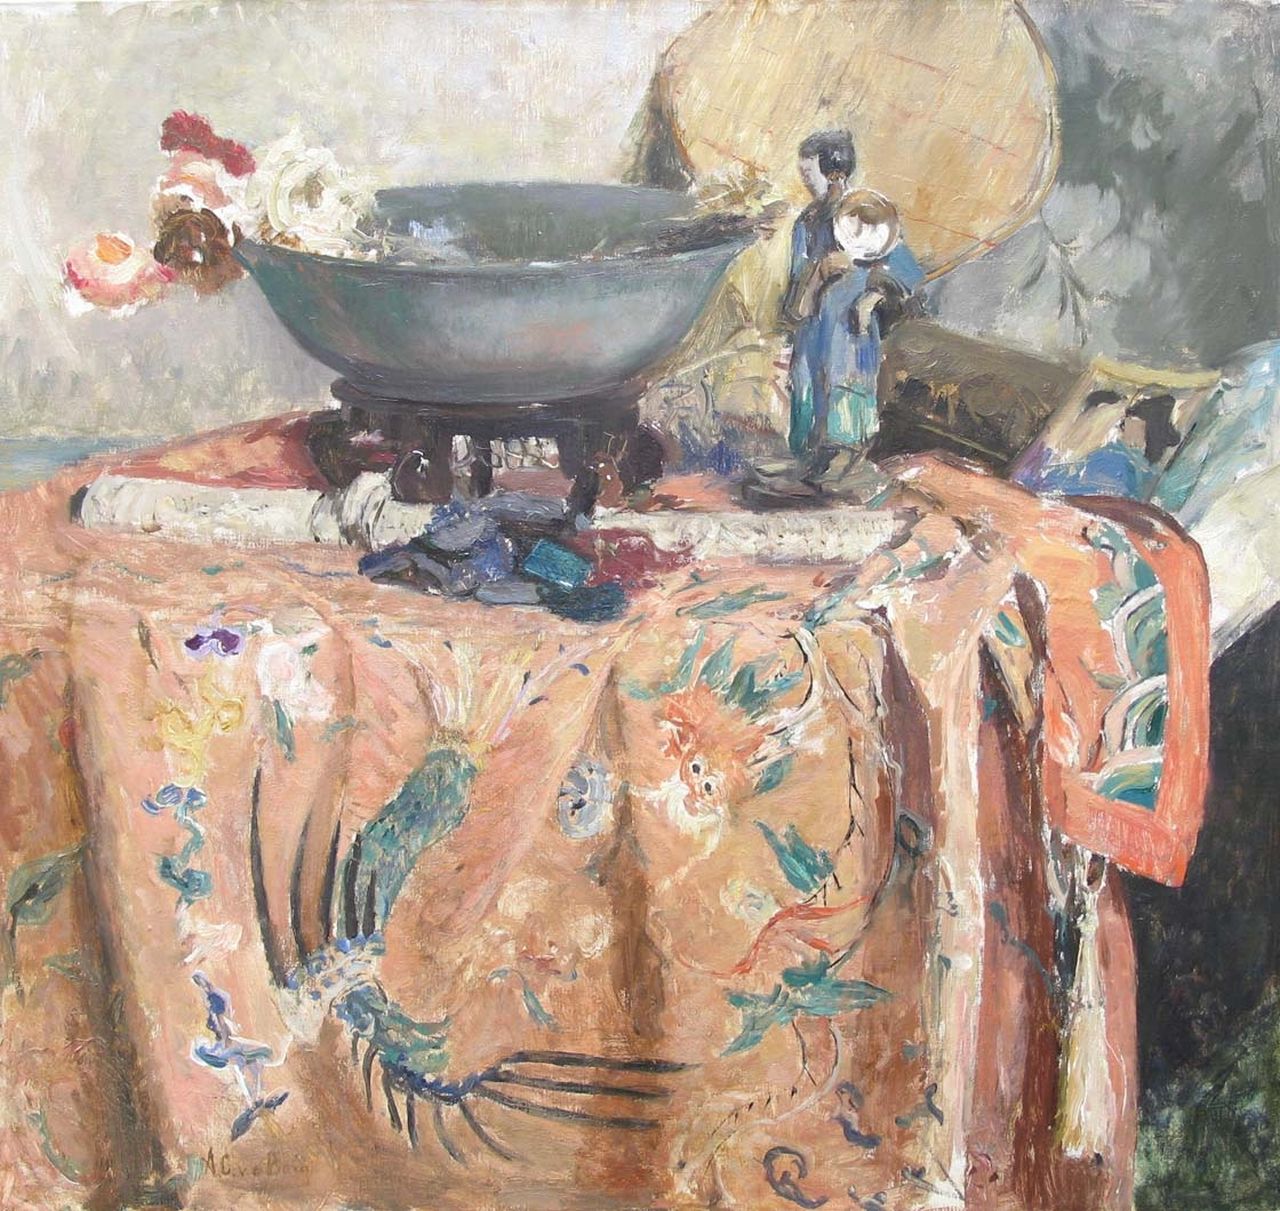 Berg A.C. van den | Anna Carolina 'Ans' van den Berg, De Chinese lap, olieverf op doek 67,6 x 72,0 cm, gesigneerd linksonder